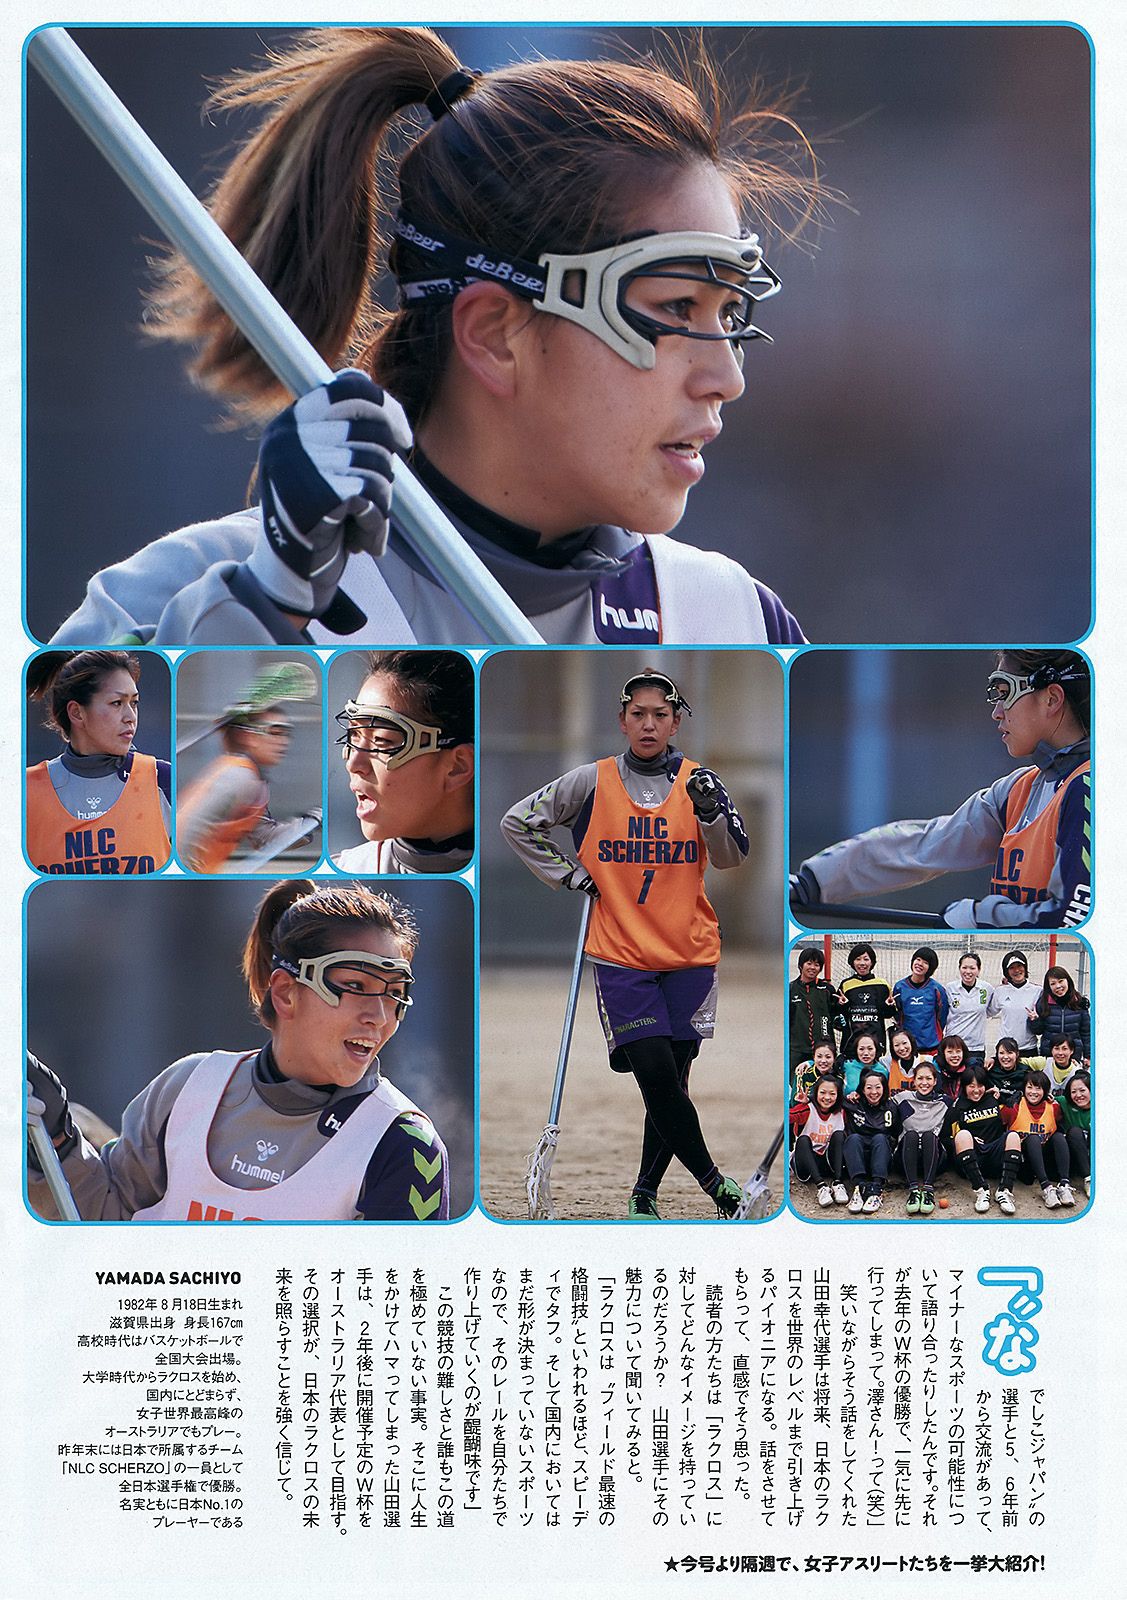 Nozomi Sasaki Meu Ninomiya Minami Sengoku [Weekly Young Jump] 2013 No.40 Photo Page 36 No.958ecc